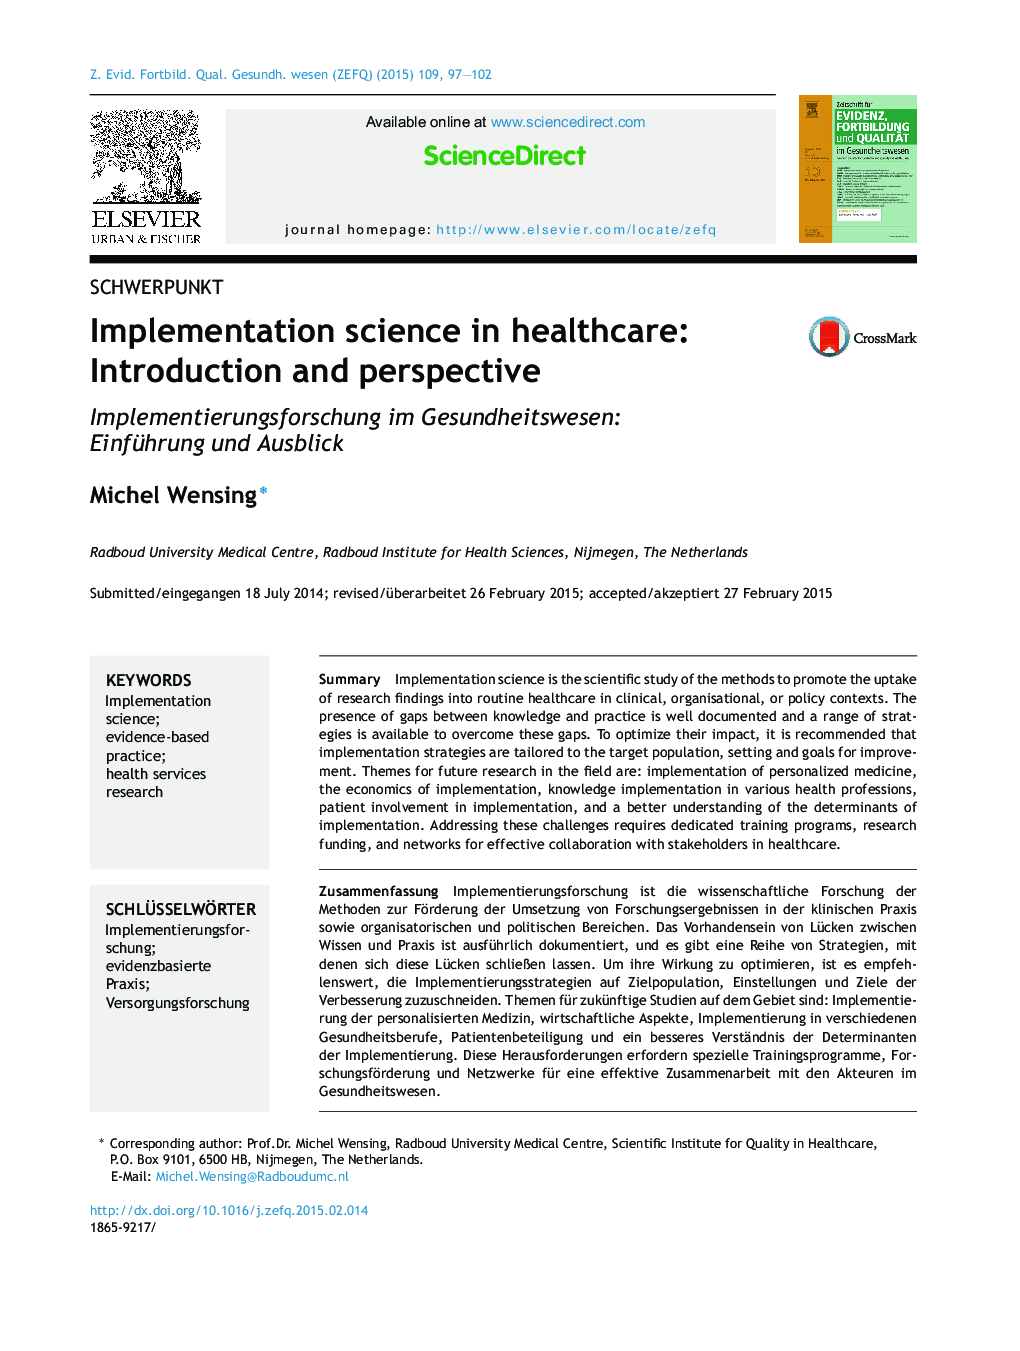 علم پیاده سازی در مراقبت های بهداشتی: مقدمه و دیدگاه